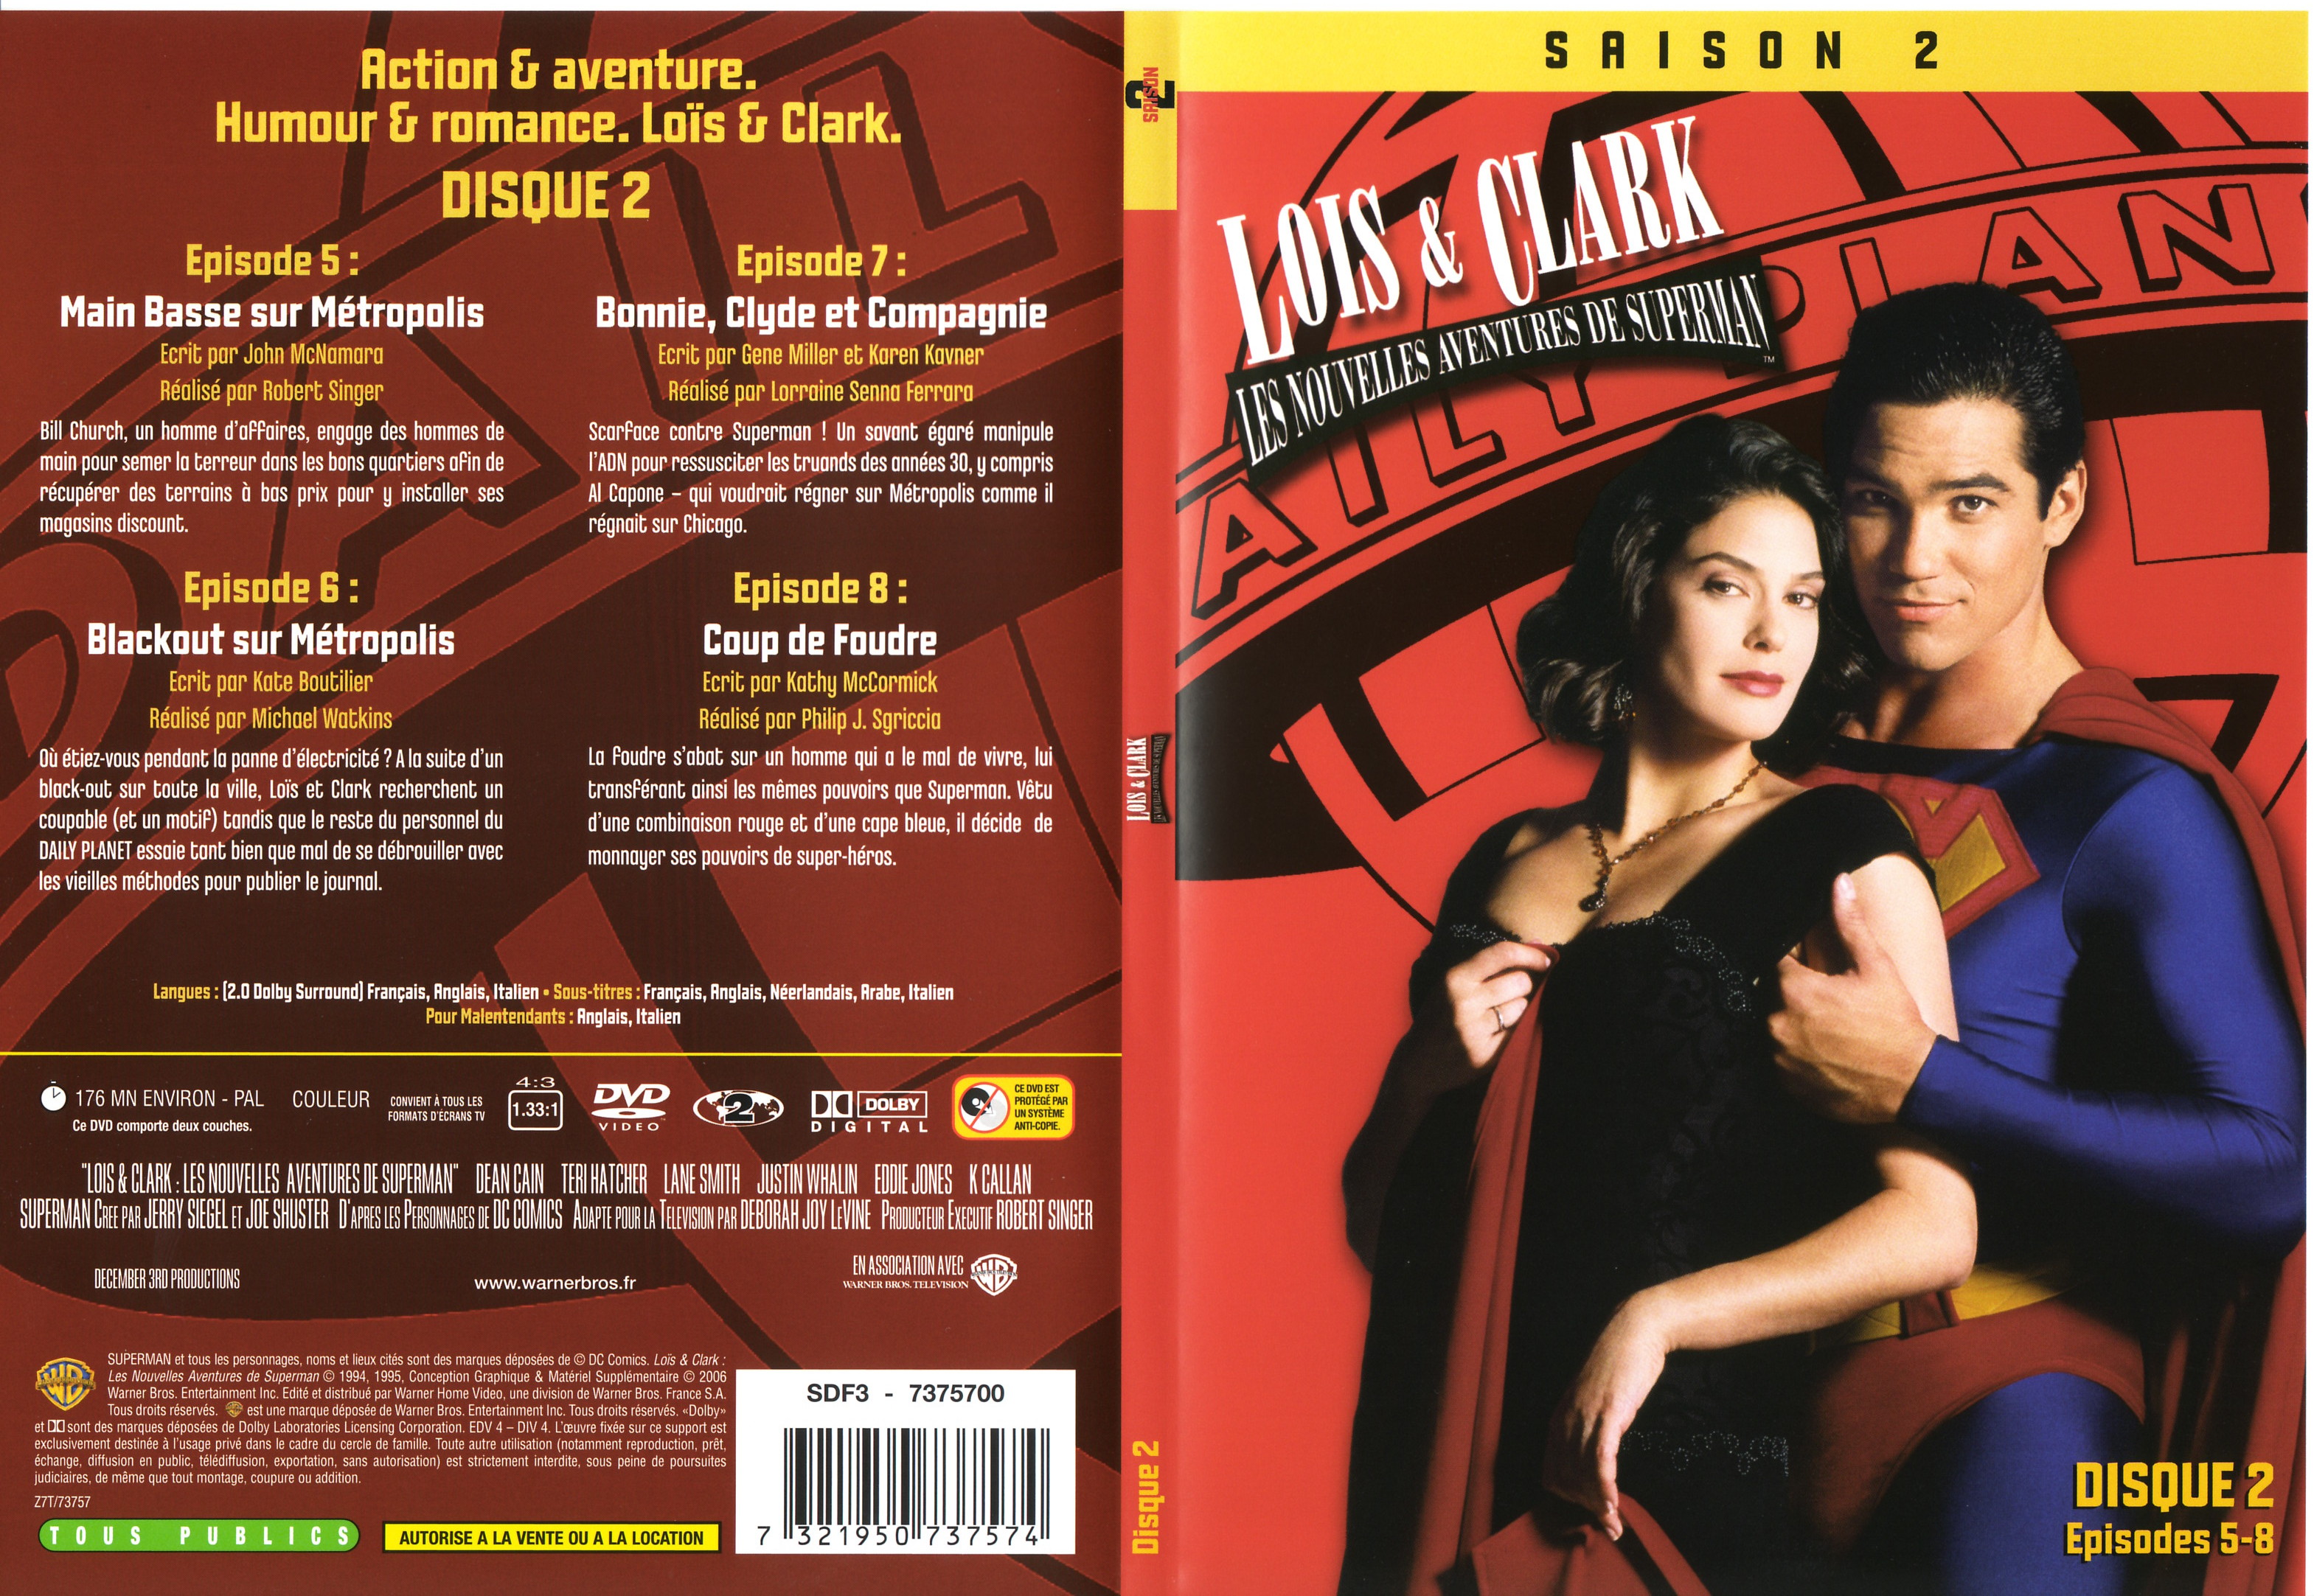 Jaquette DVD Lois et Clark Saison 2 vol 2